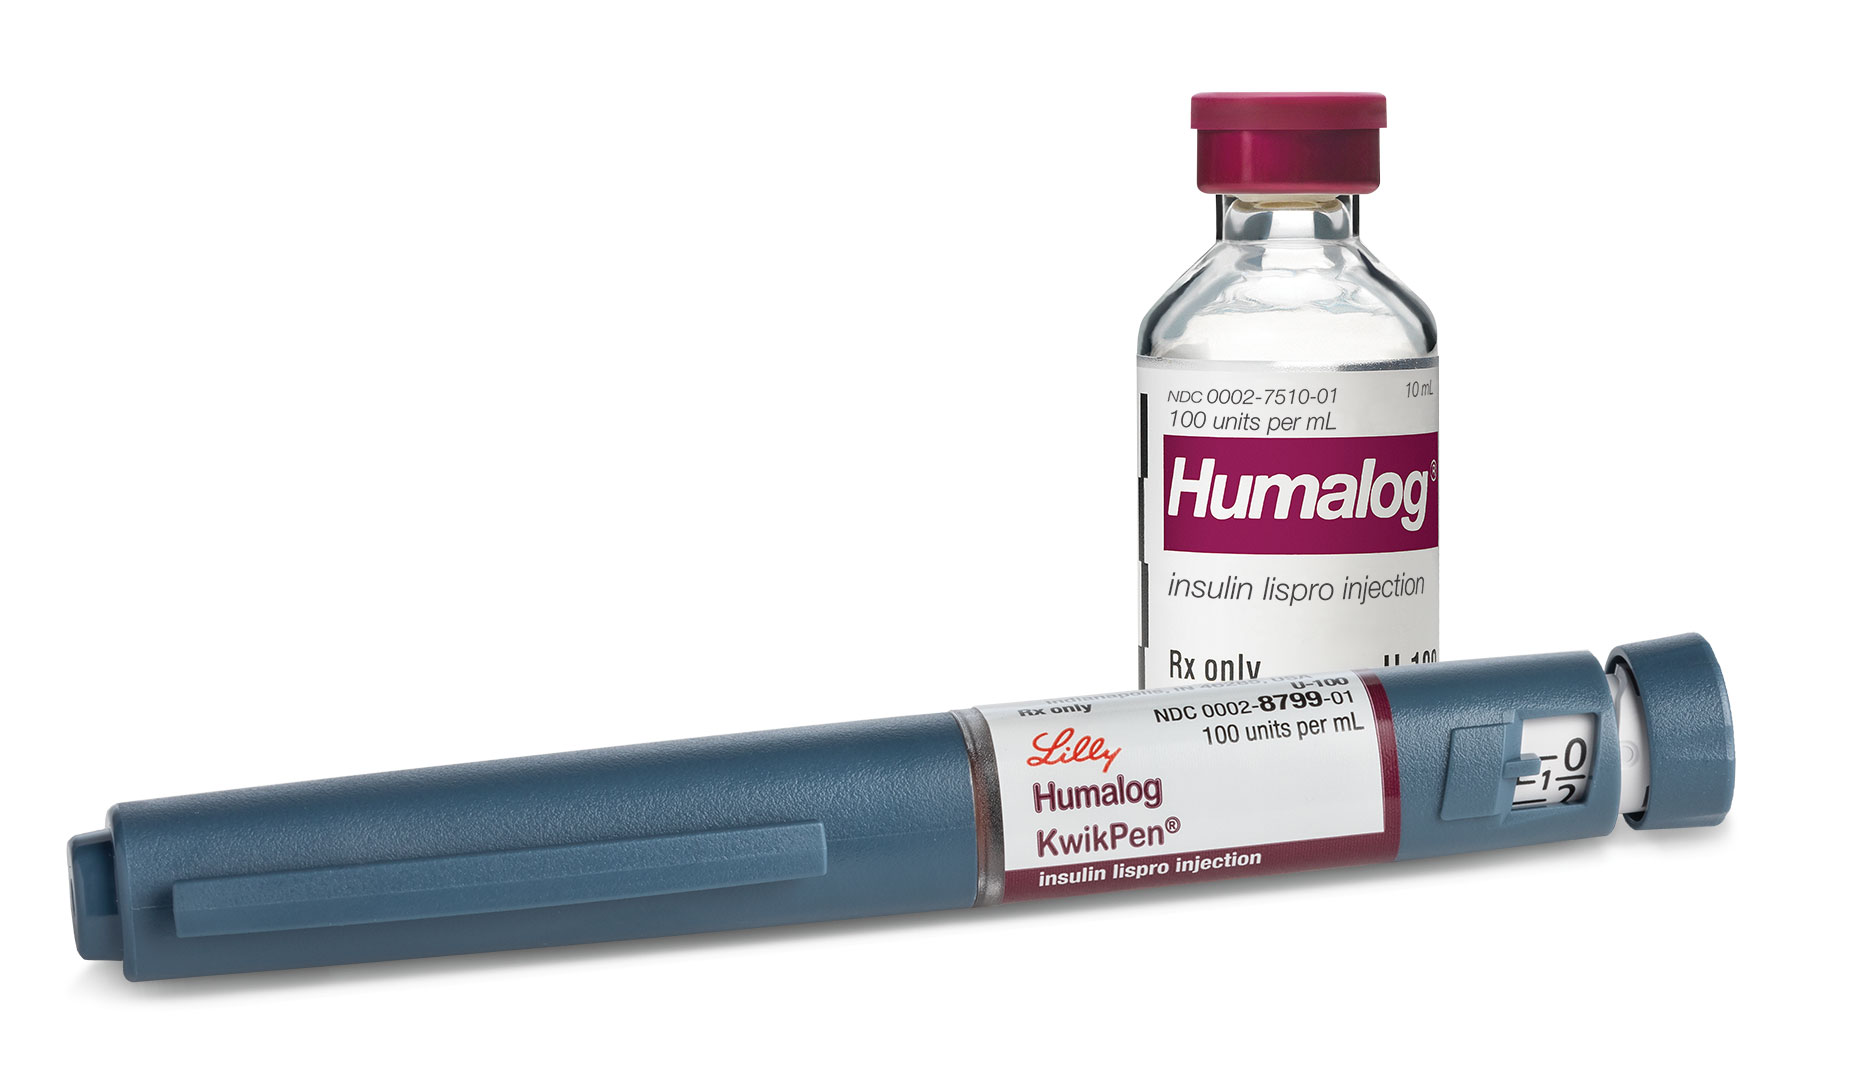 Humalog vial and KwikPen